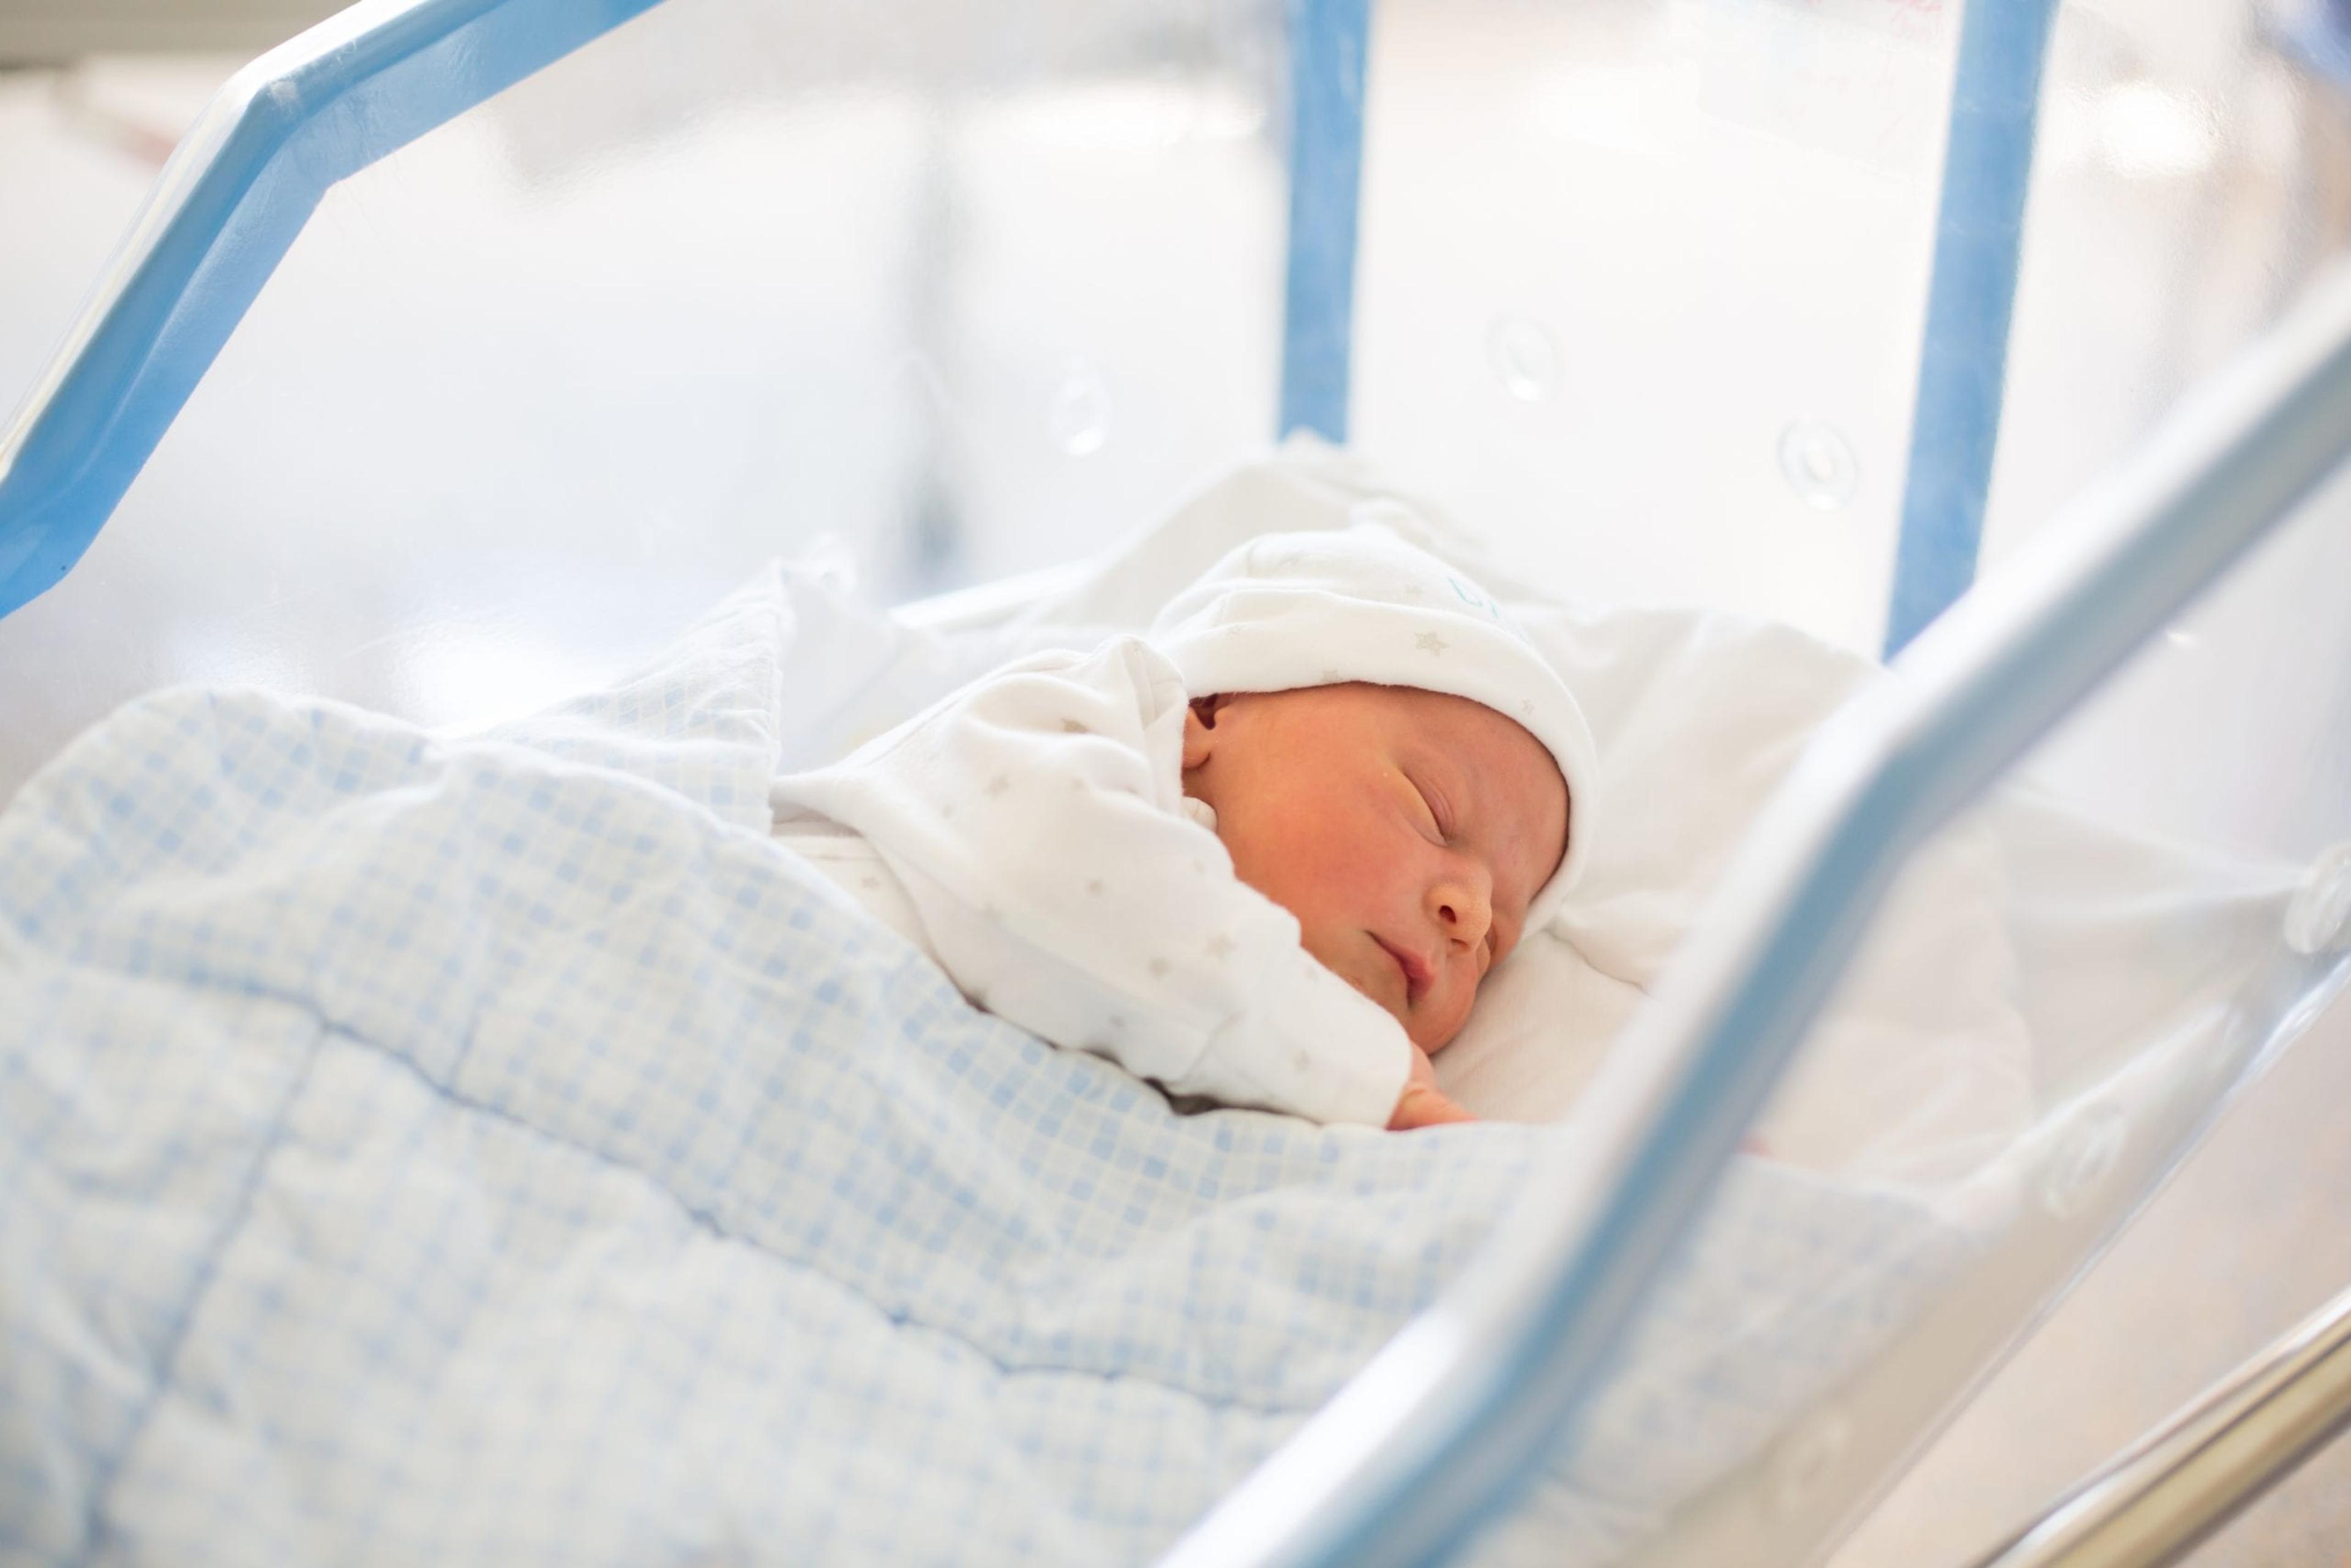 Image of a newborn sleeping in a hospital crib.